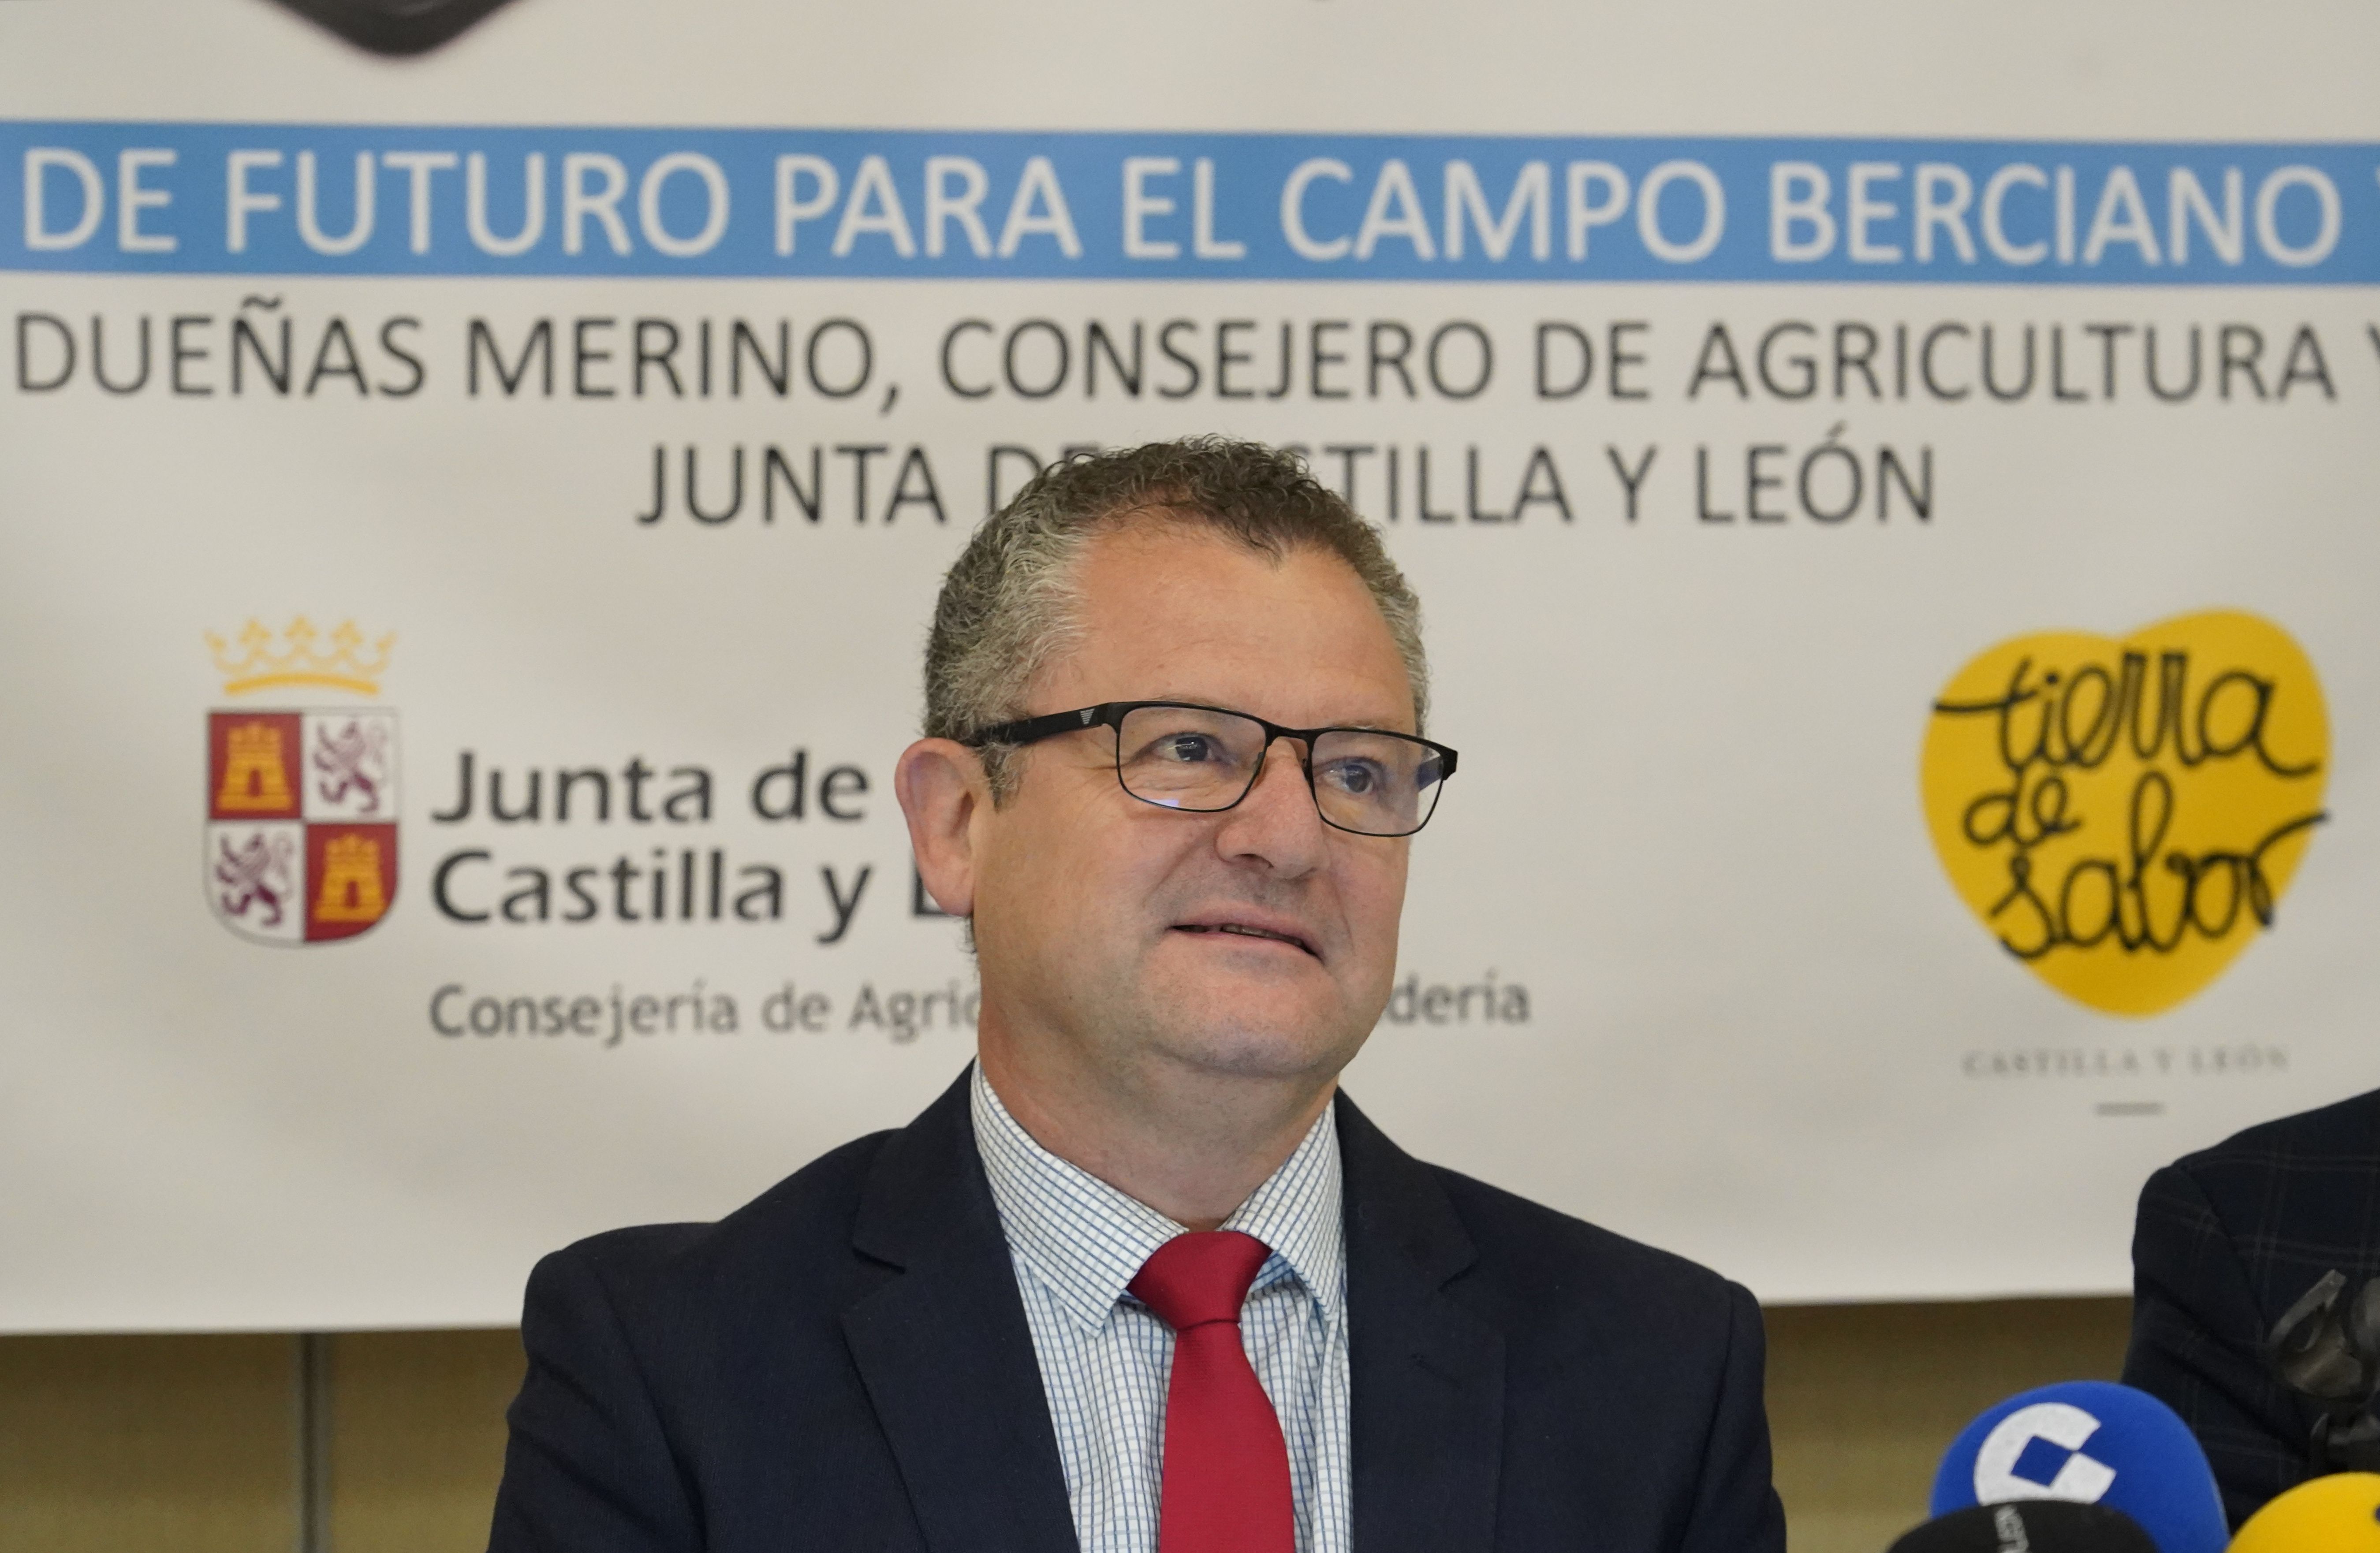 El consejero de Agricultura y Ganadería, Gerardo Dueñas, en Ponferrada, en imagen de archivo. | César Sánchez (Ical)